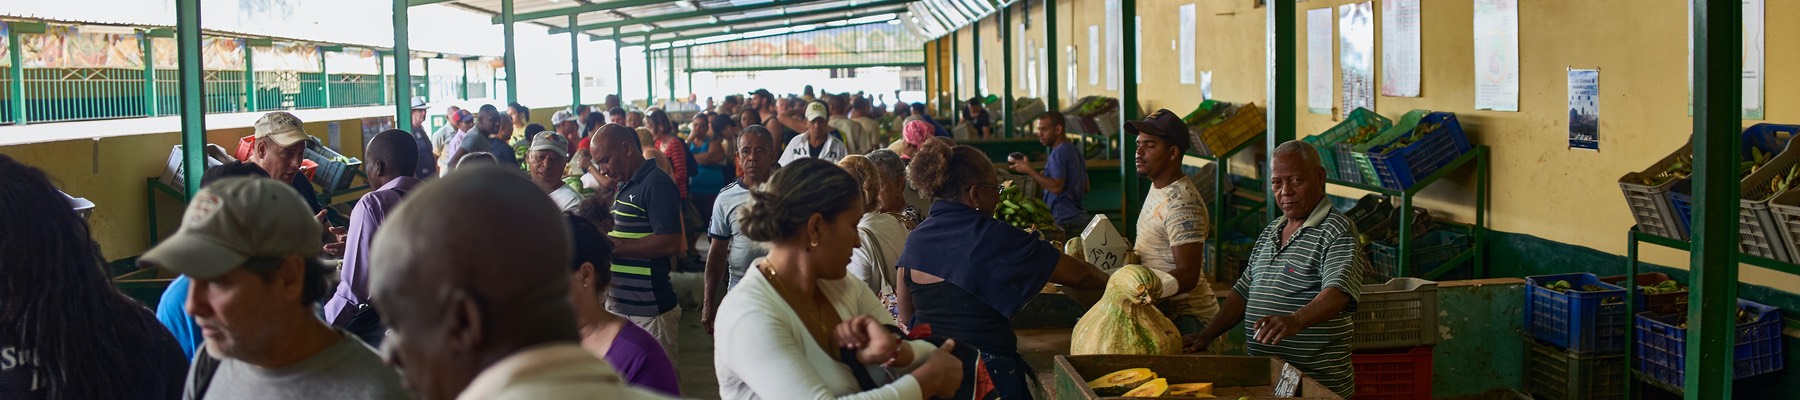 Egy havannai piacon 2